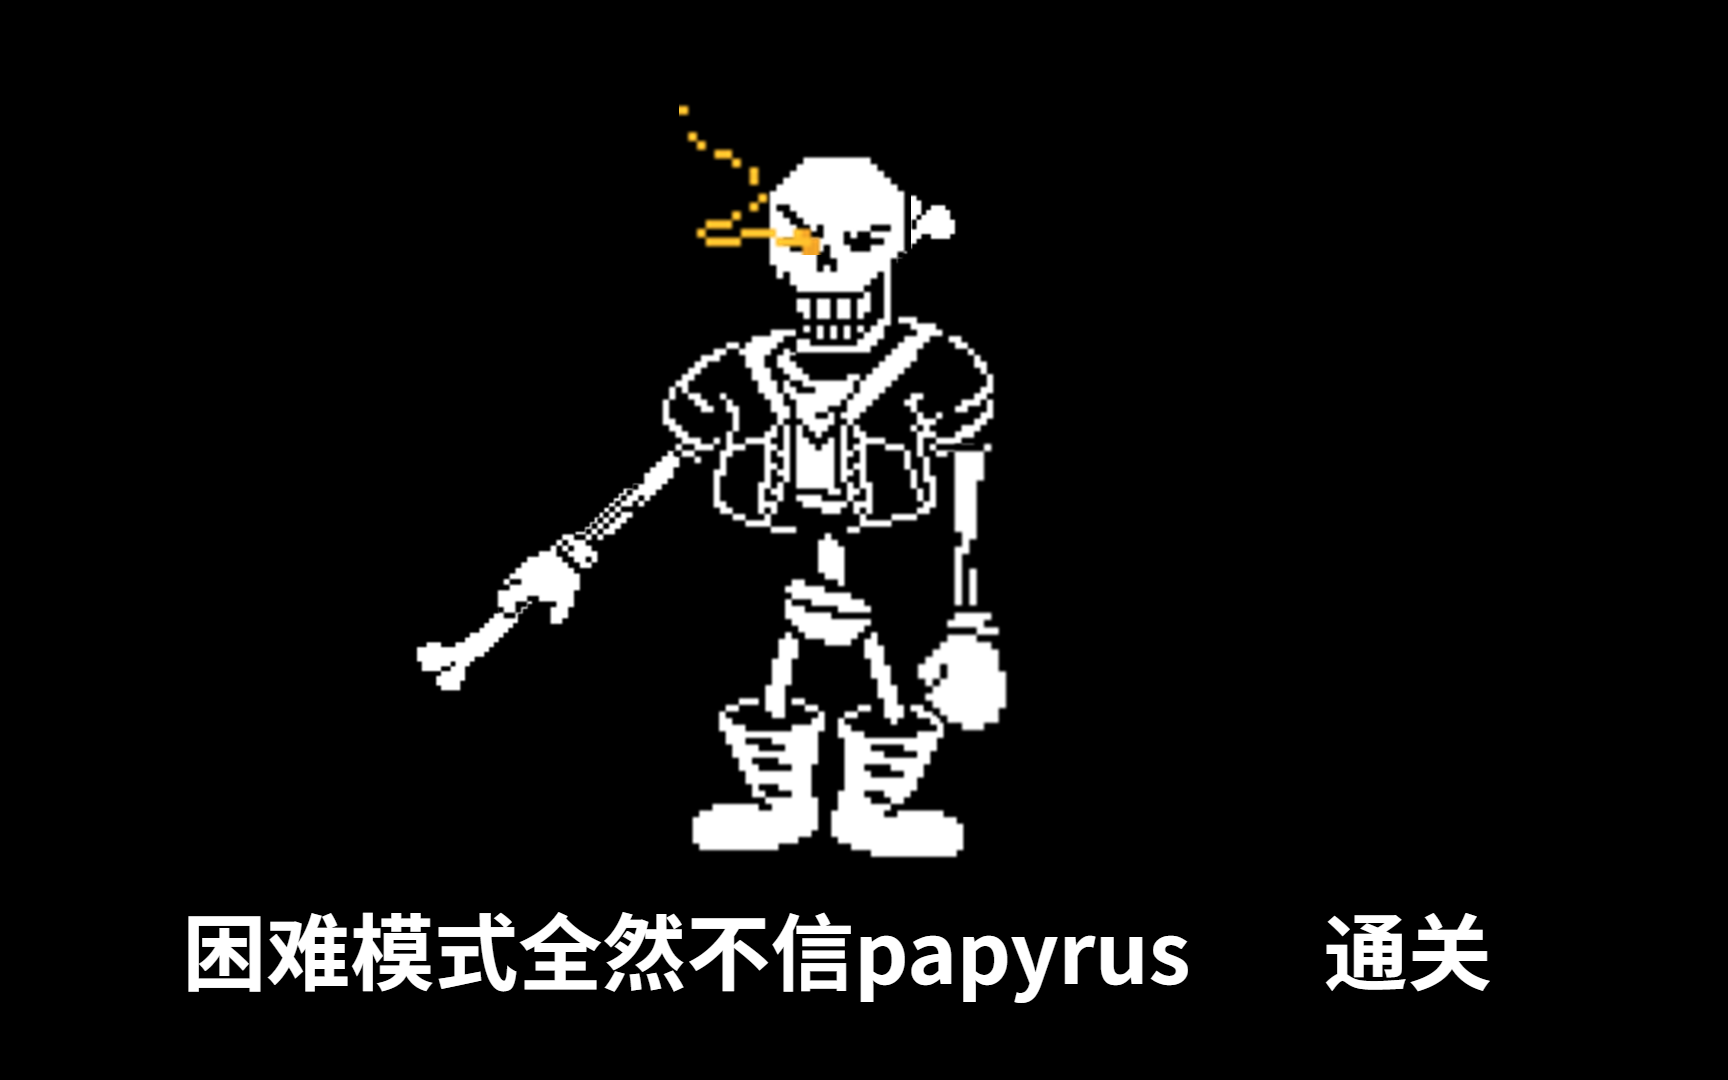 papyrus全然不信图片图片